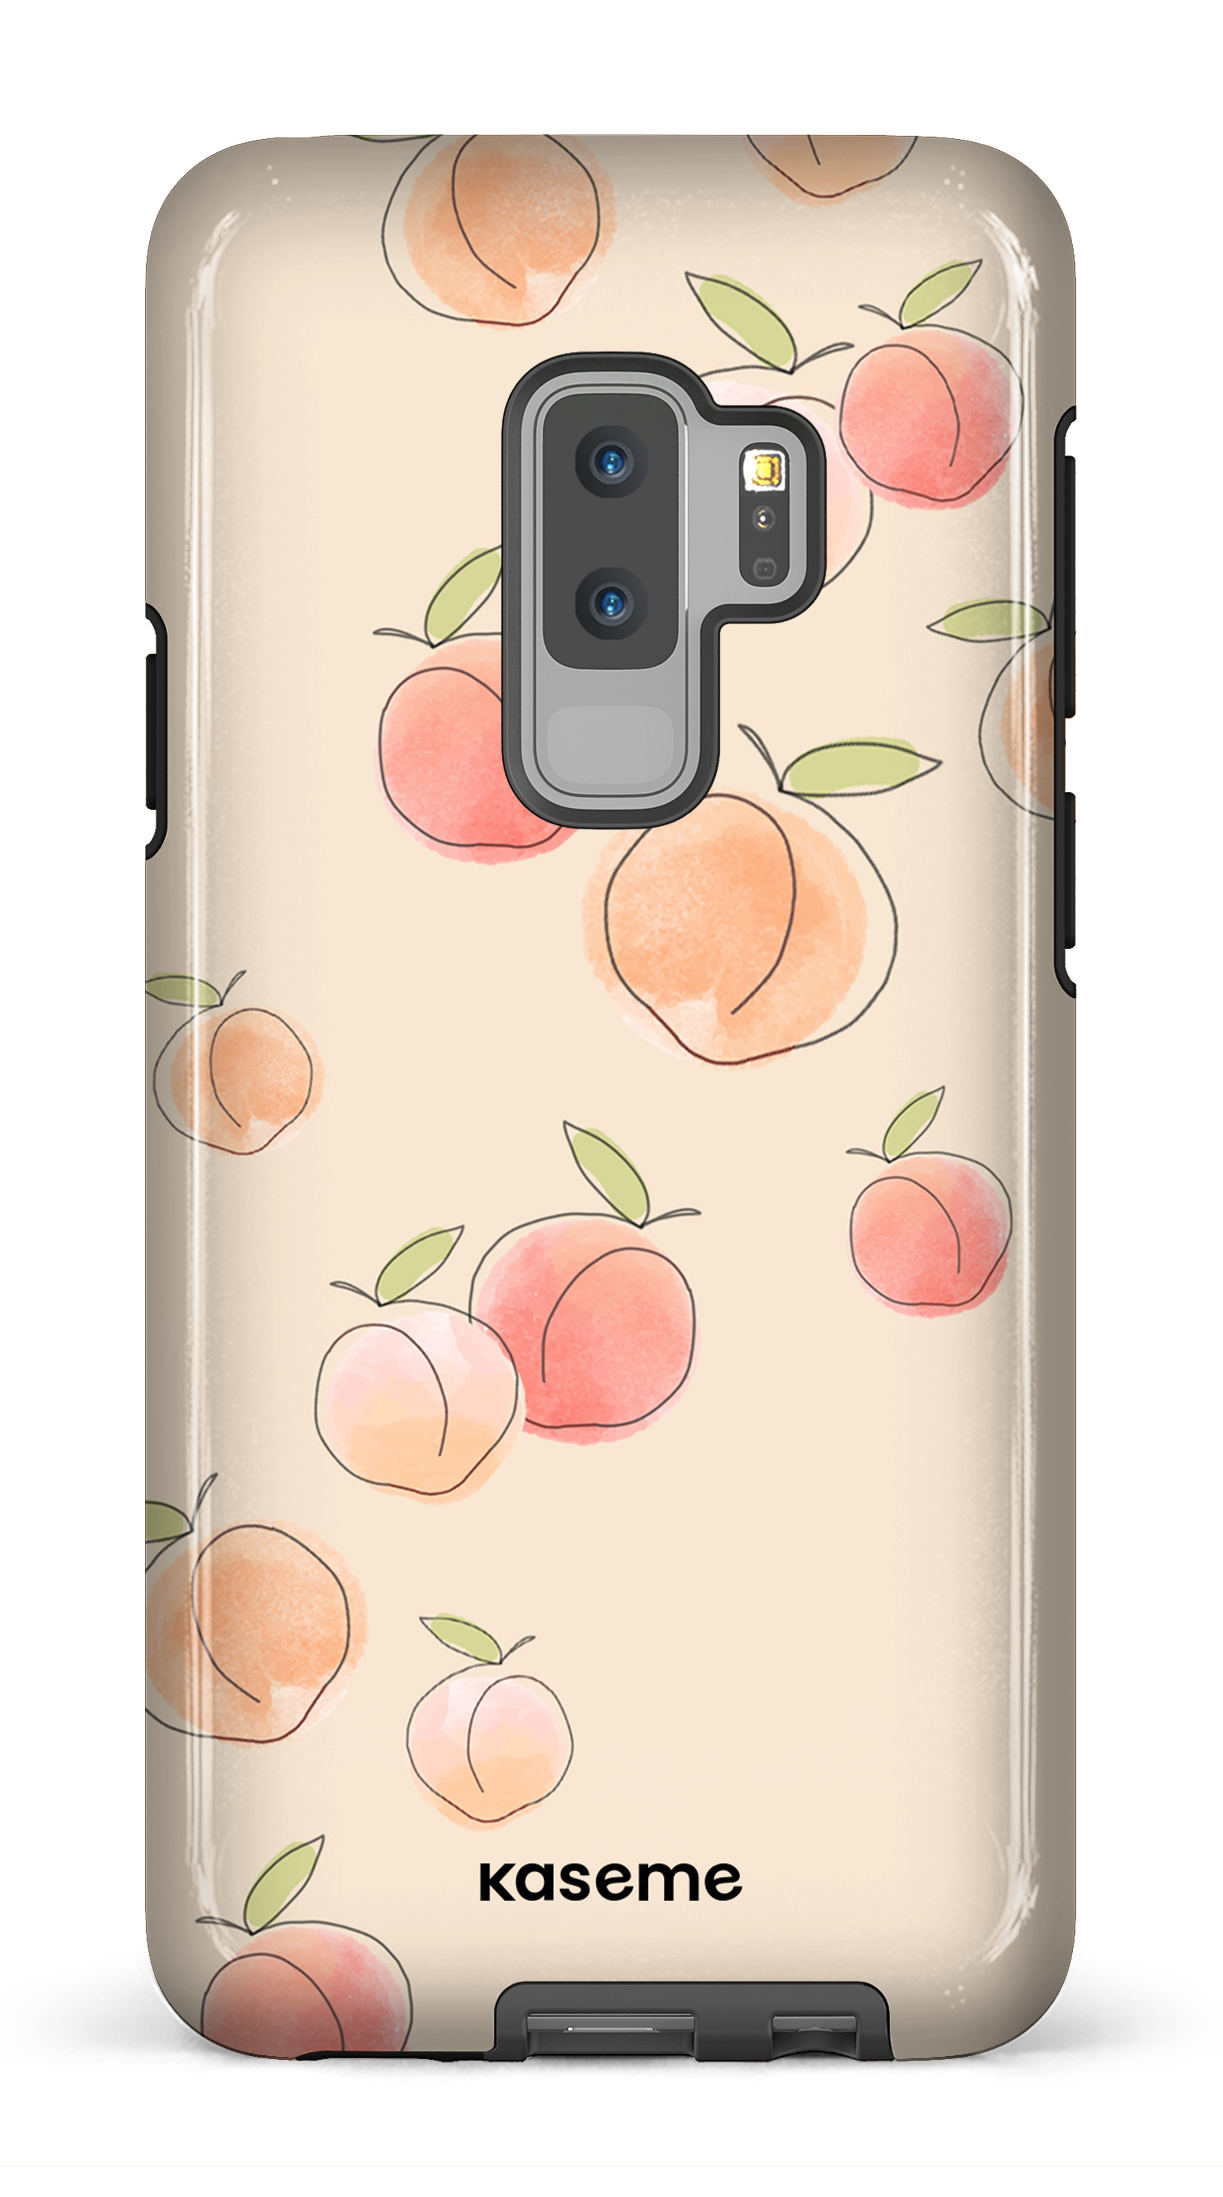 Peachy - Galaxy S9 Plus